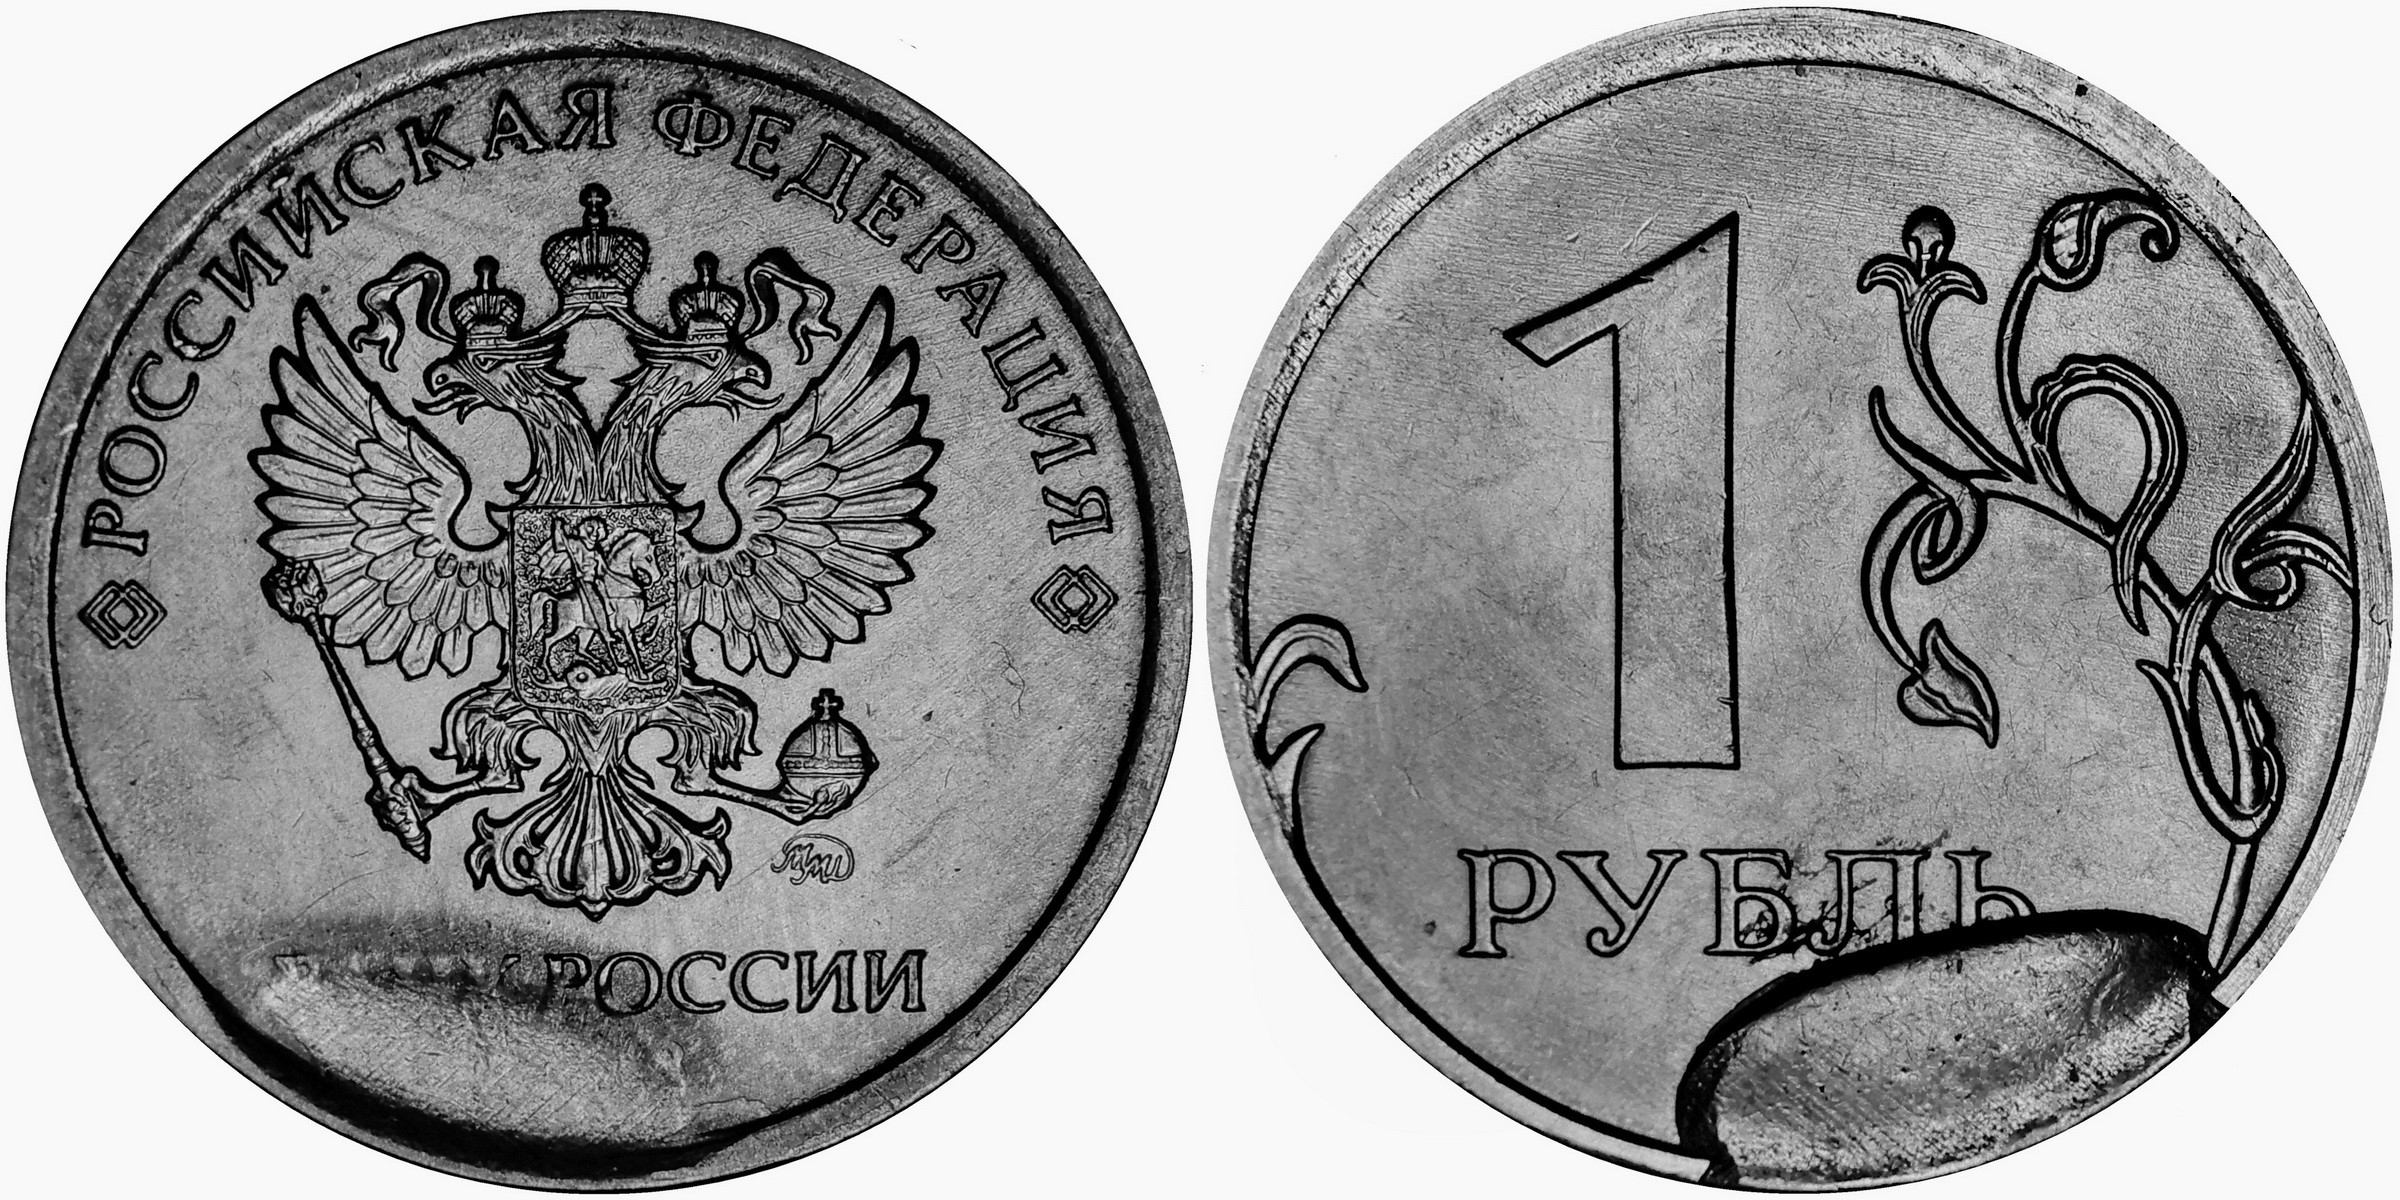 1 рубль это сколько вон. Монета 1 рубль реверс и Аверс. 1 Рубль 2020 брак раскол штемпеля. 1 Рубль 2020 года брак раскол. Монета брак 1 рубль 2020 раскол штемпеля.